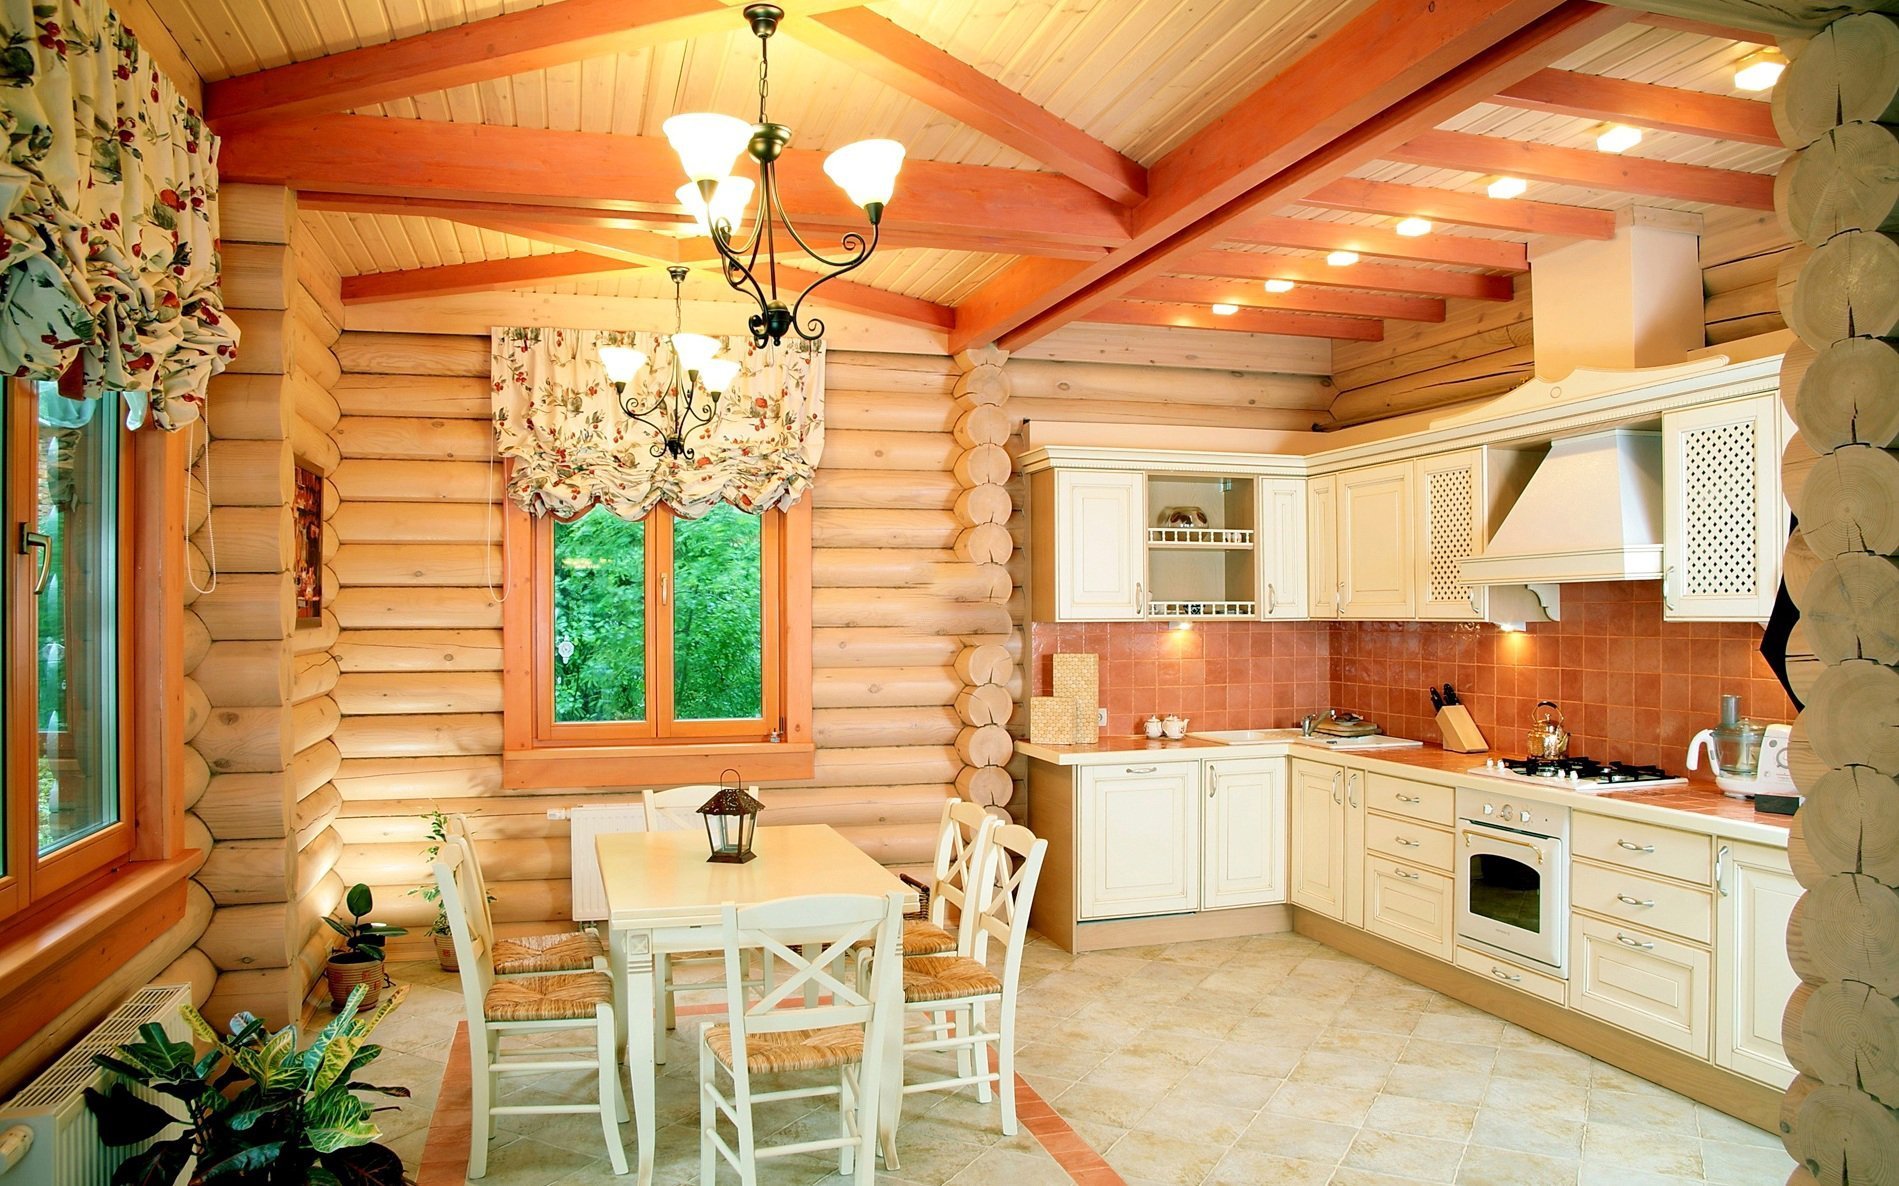 White kitchen in a log cabin kitchen